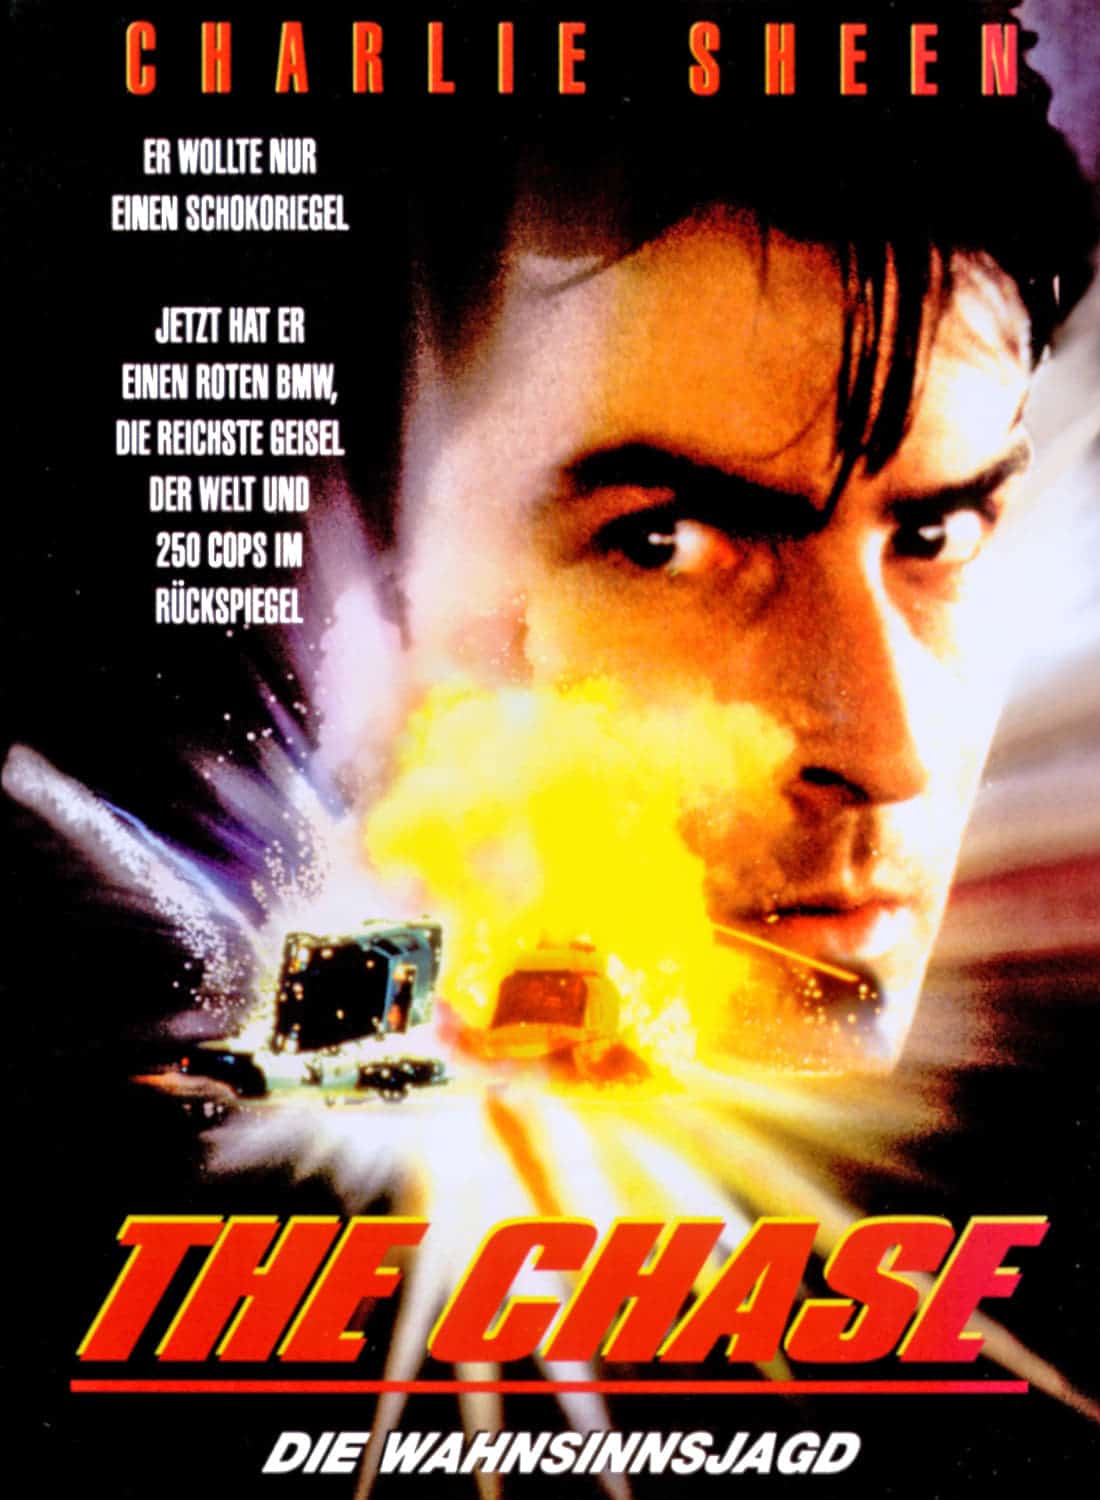 Plakat von "The Chase - Die Wahnsinnsjagd"